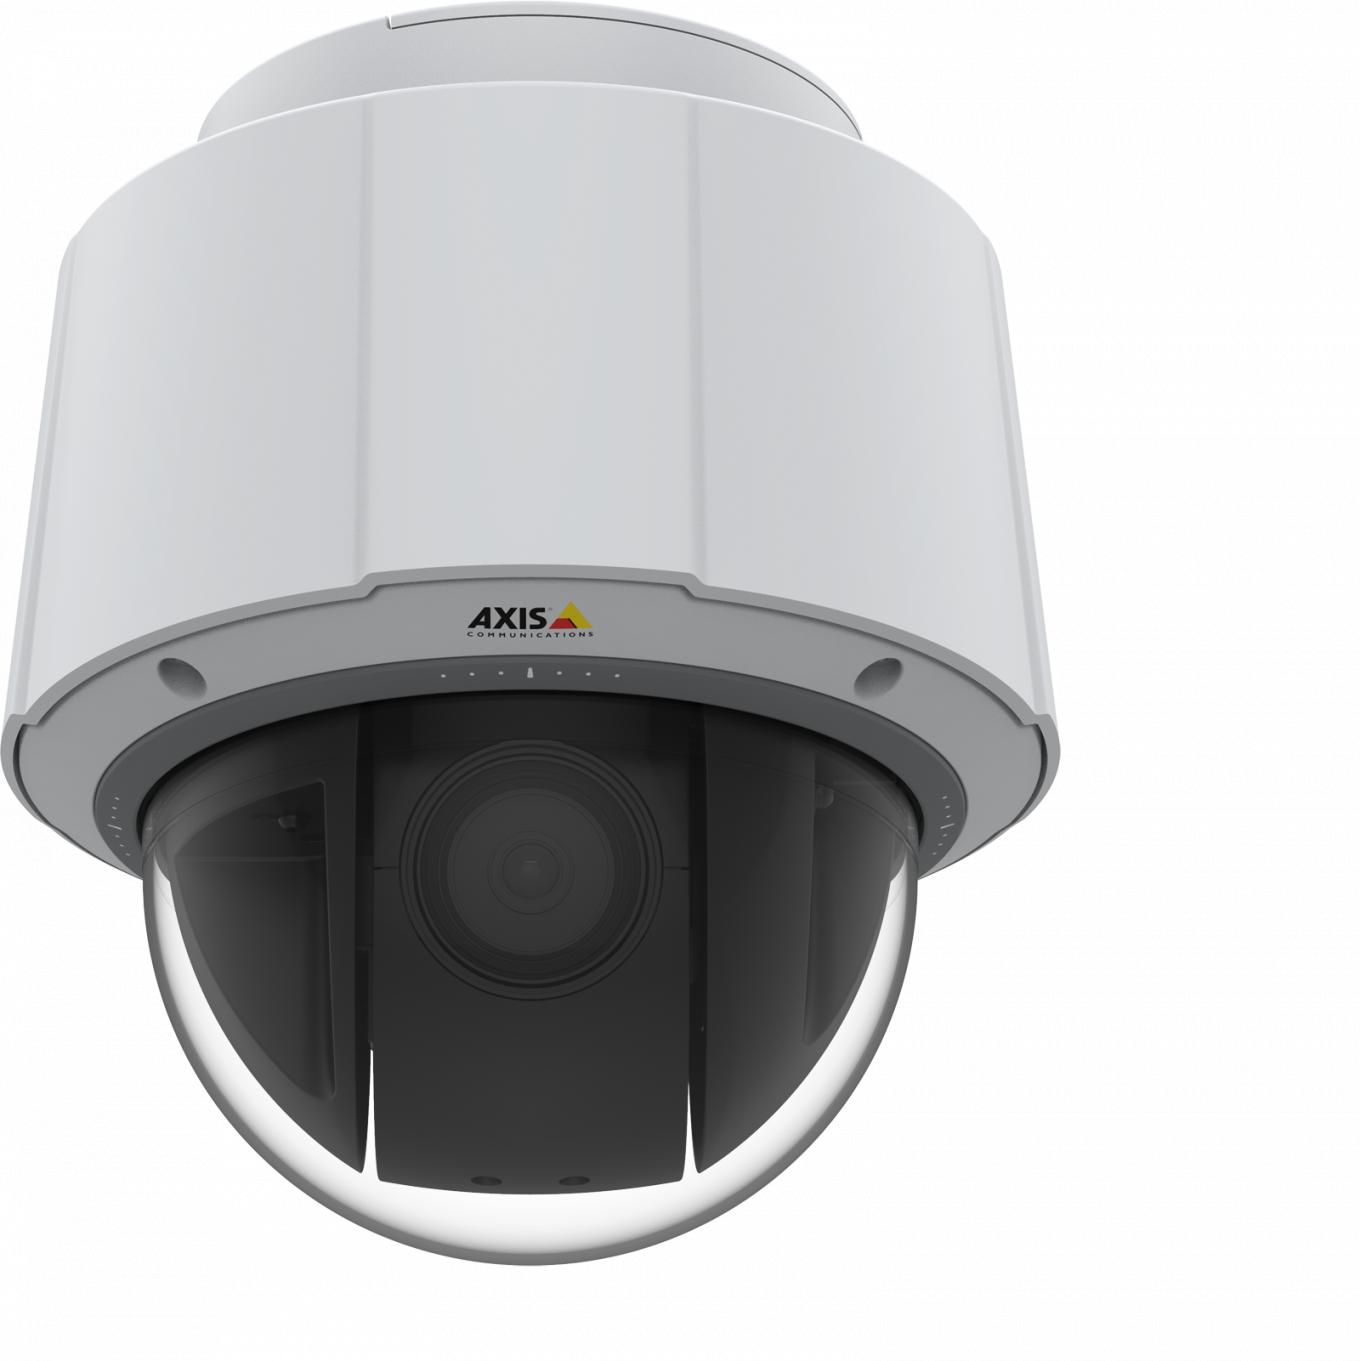 Axis IP Camera Q6074 ma wewnętrzną kamerę PTZ z HDTV 720p i 30-krotnym zoomem optycznym